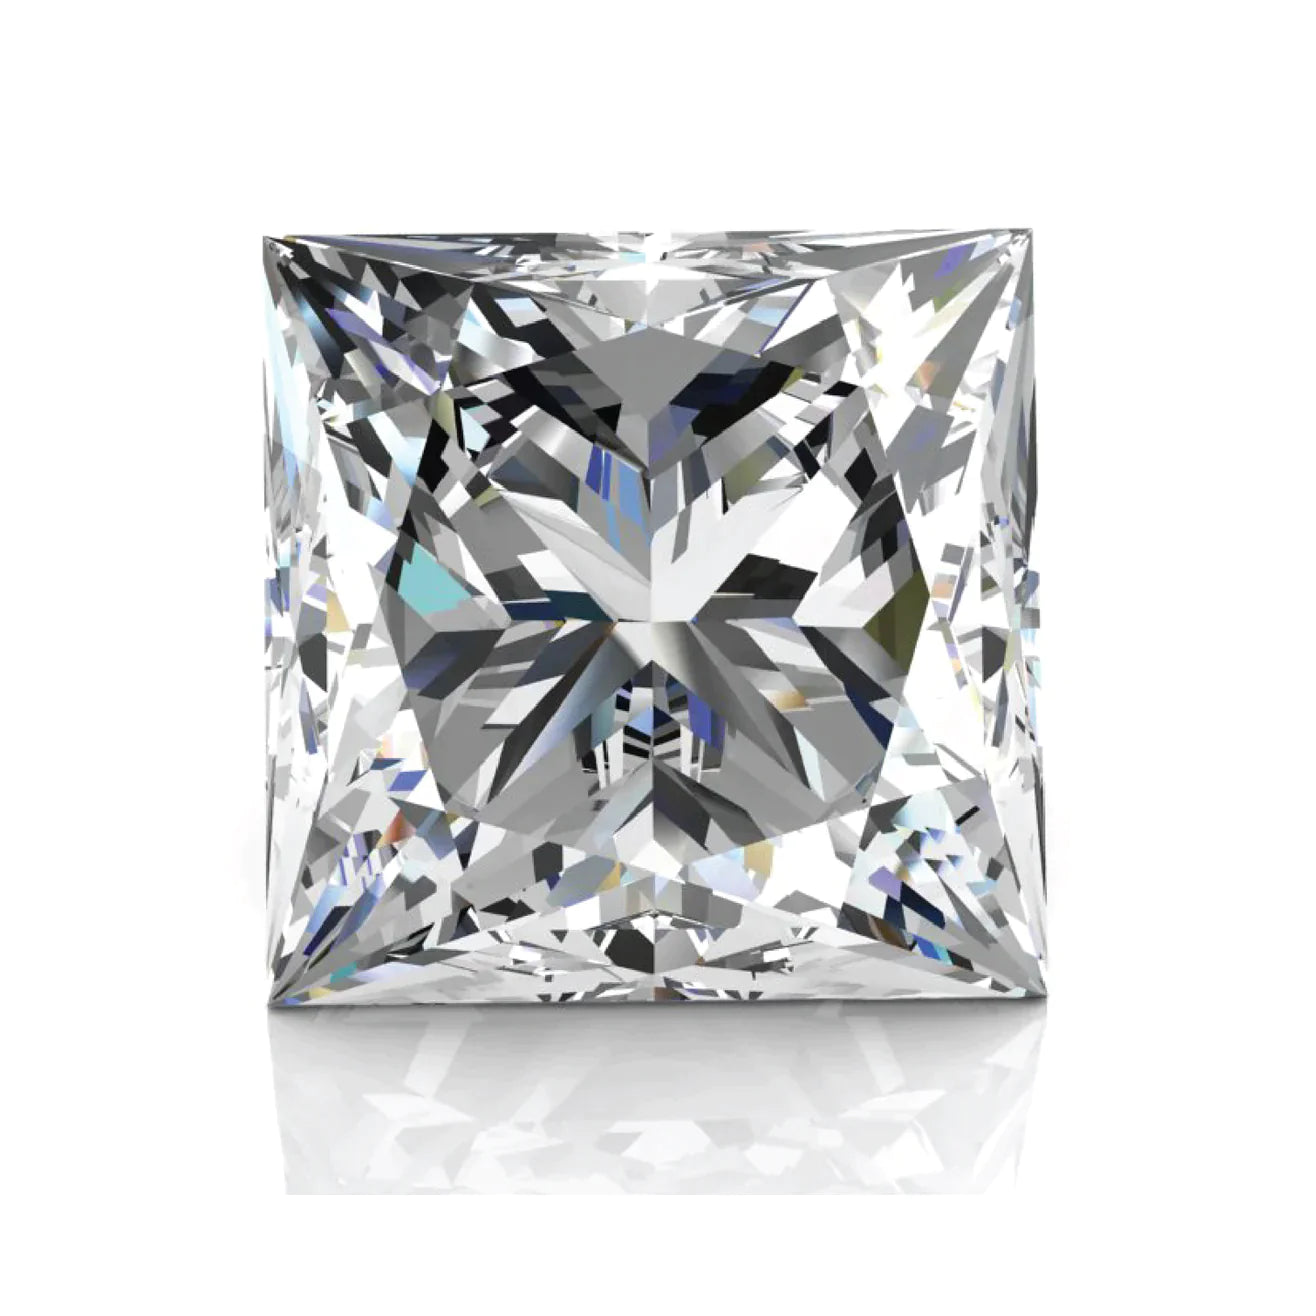 1.25 Lab Grown Princess Cut Diamond , Color D , Clarity VS1 - IGI LG593371822 - TRIPLE EXCELLENT